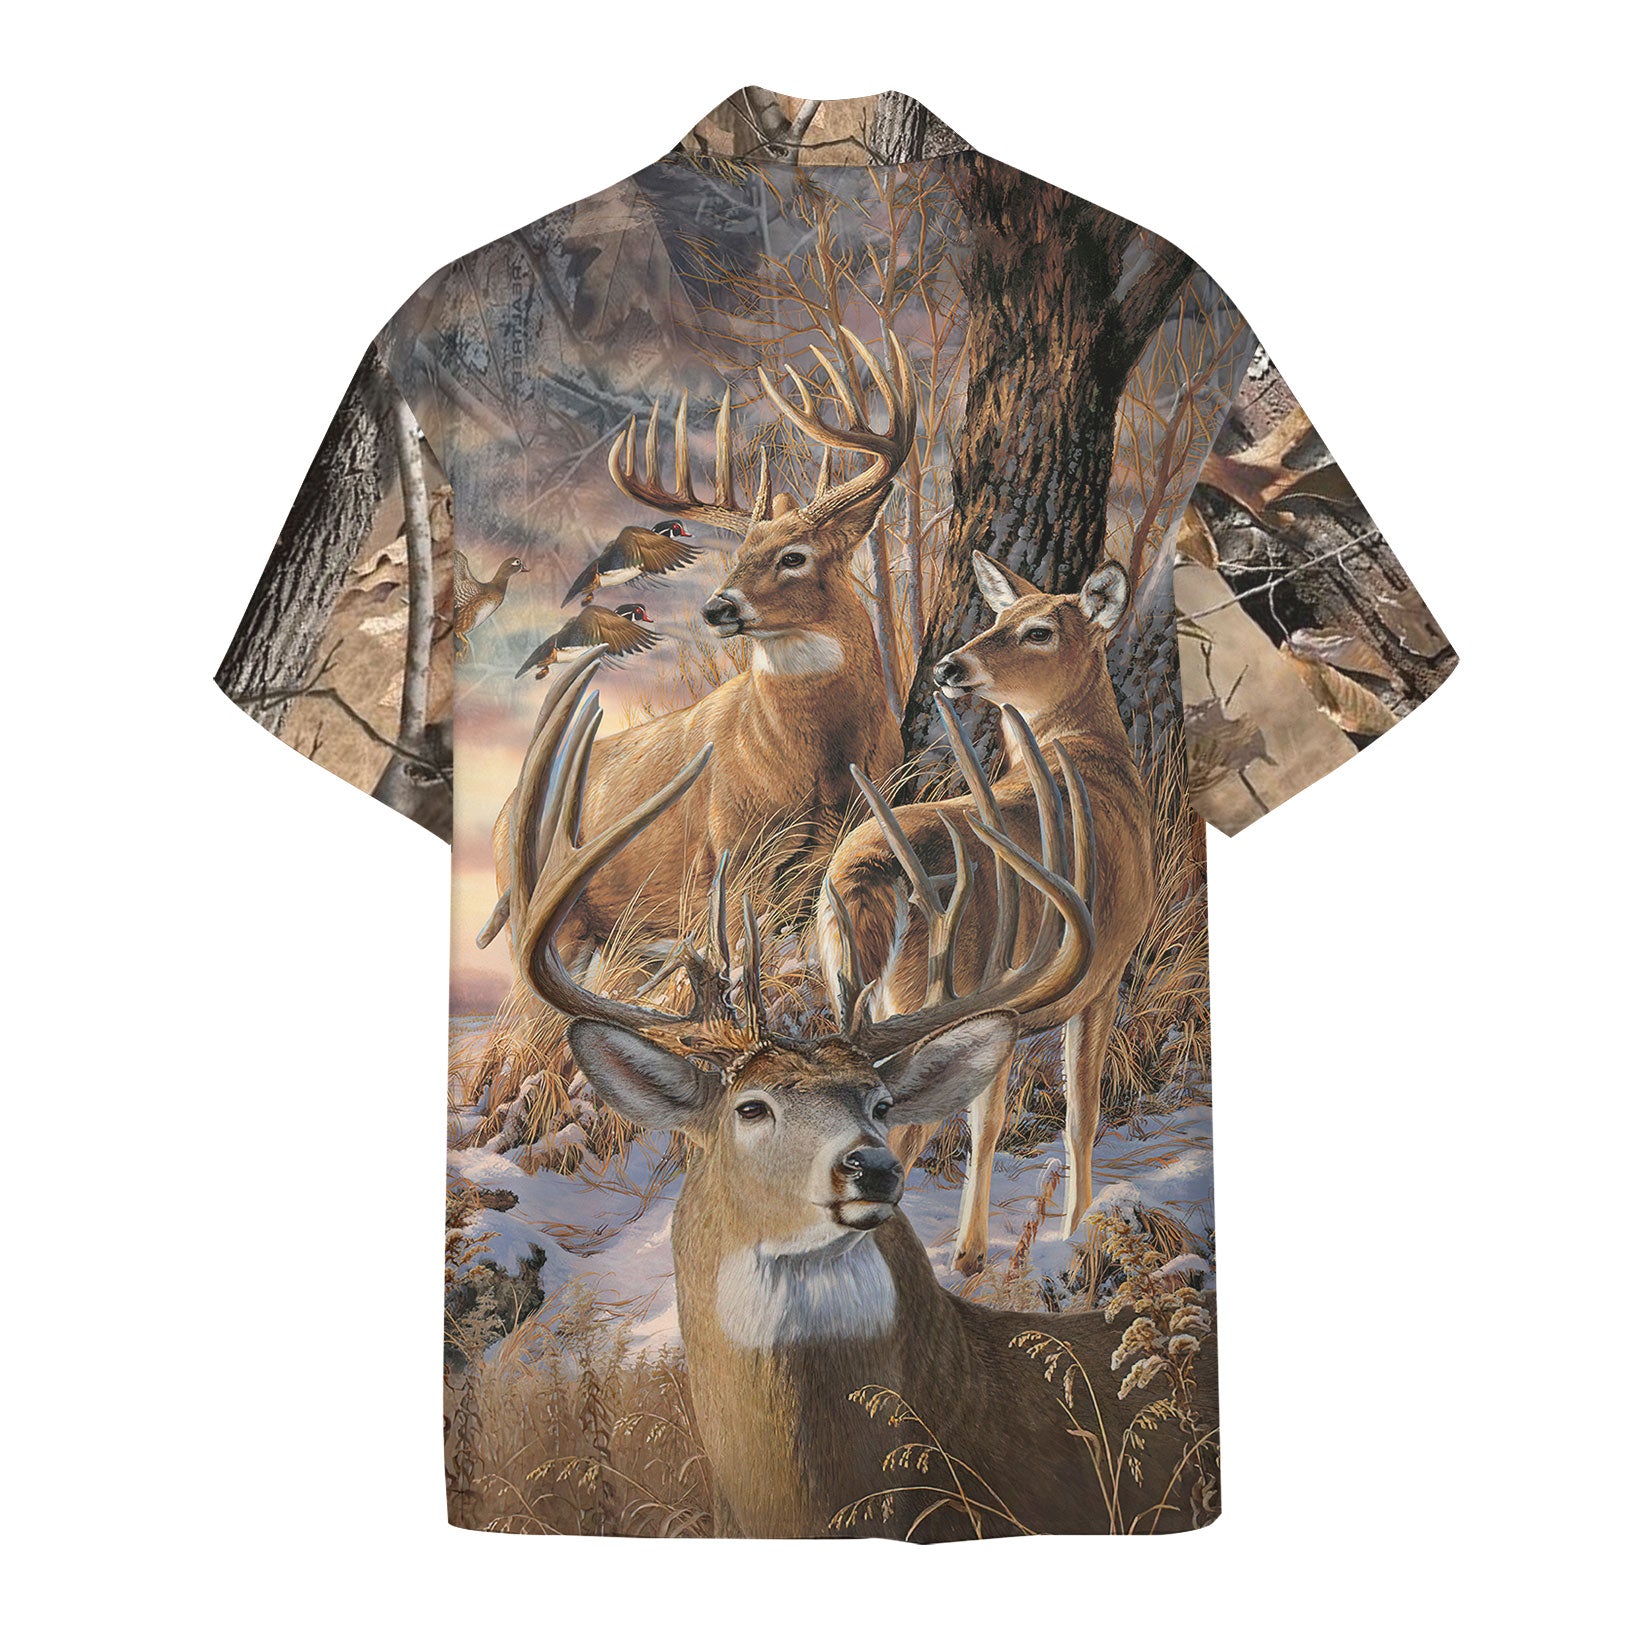 Deer Hunting Hawaii Shirt